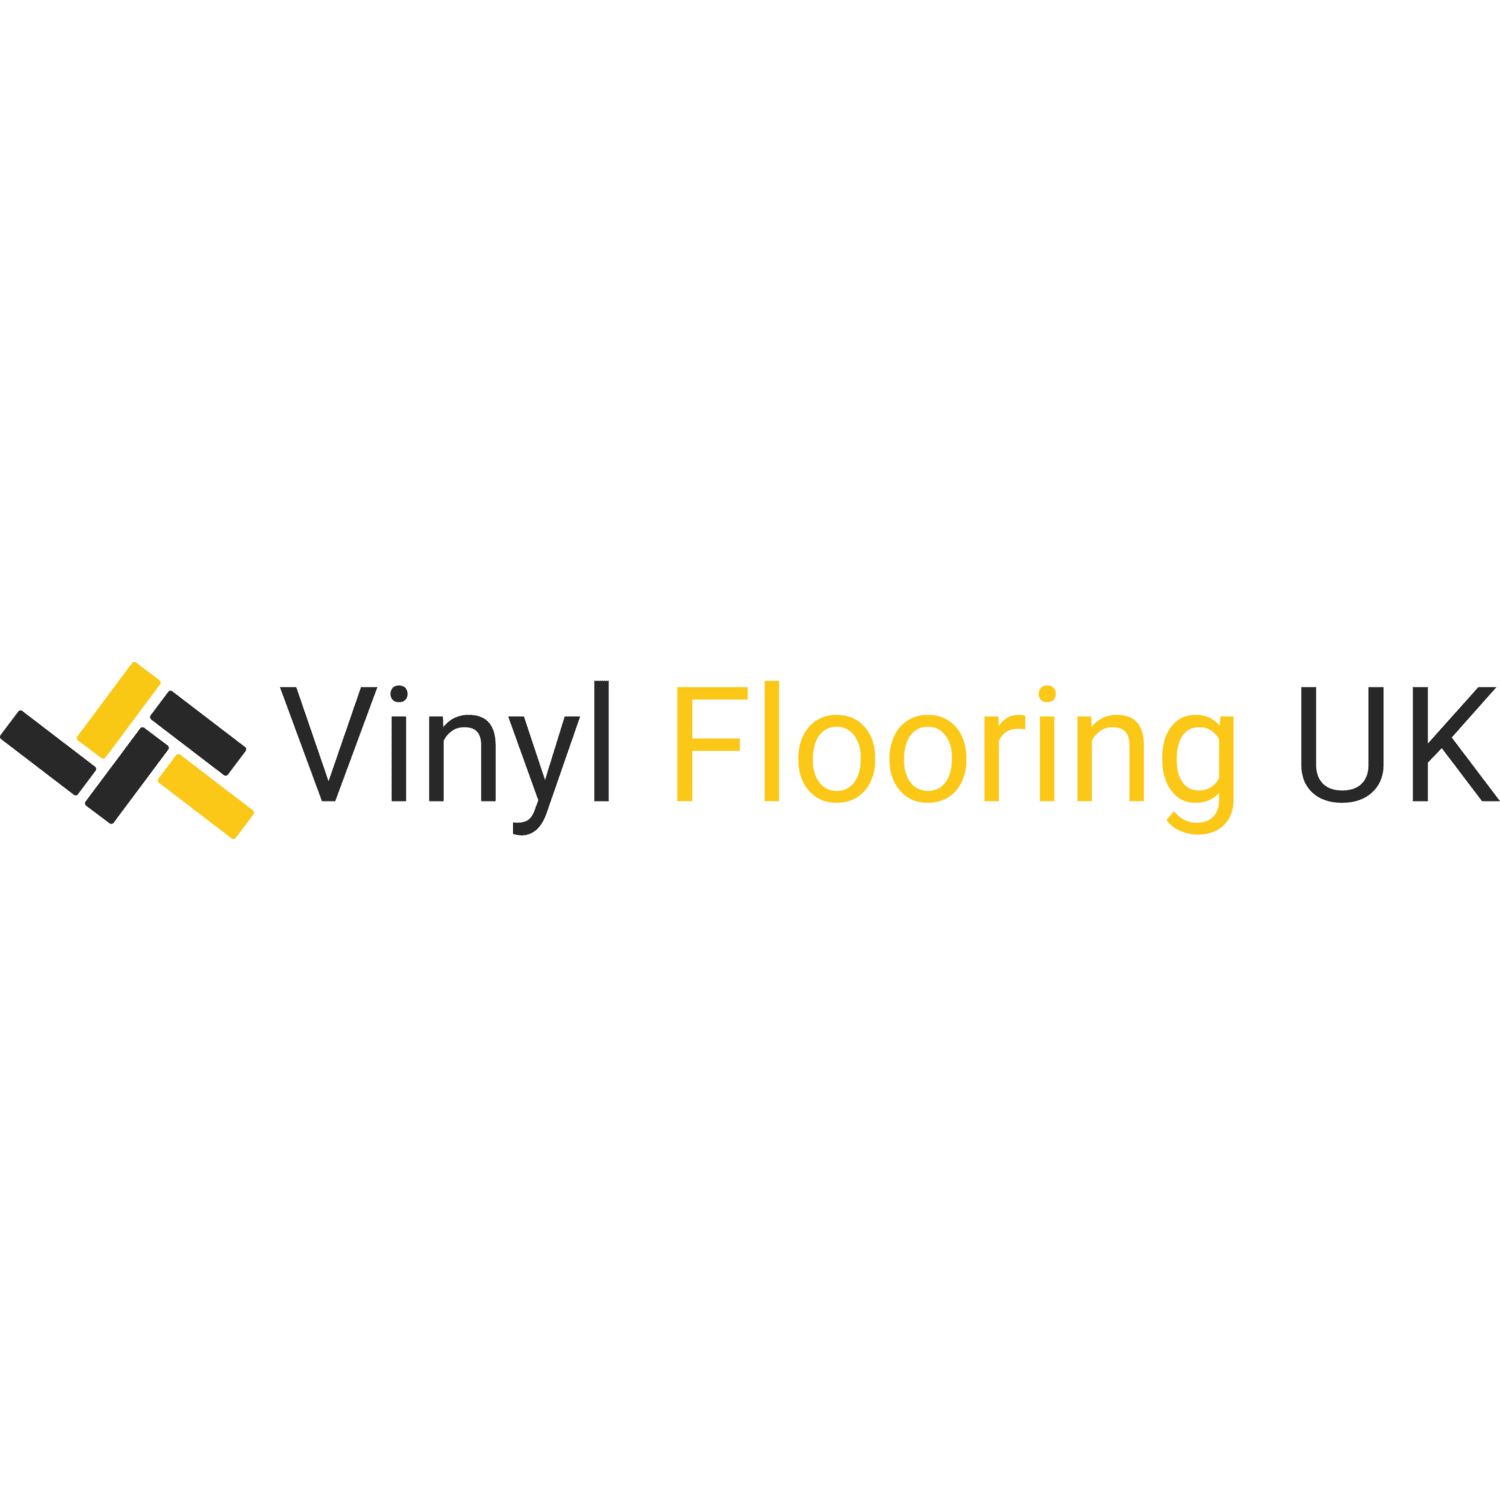 VINYL FLOORING UK cover